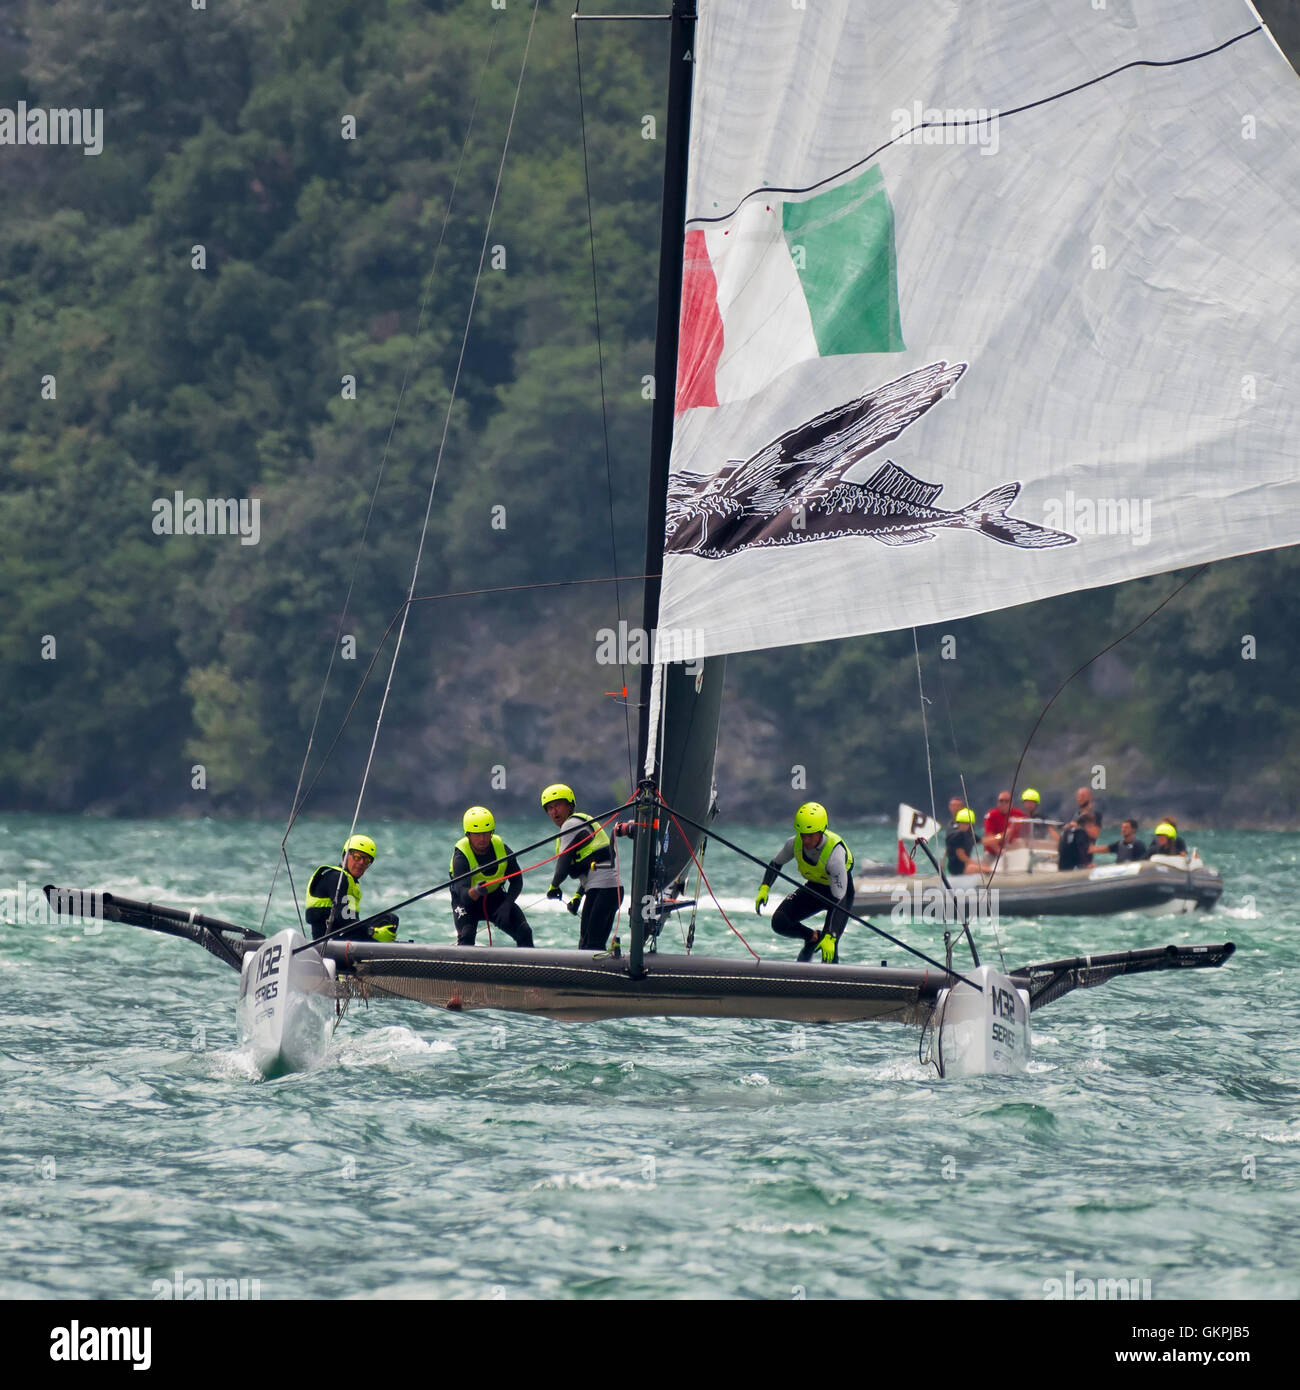 RIVA DEL GARDA, ITALIE - 20 août : deuxième jour de compétition pour M32 series méditerranée, un catamaran rapide à la concurrence Banque D'Images